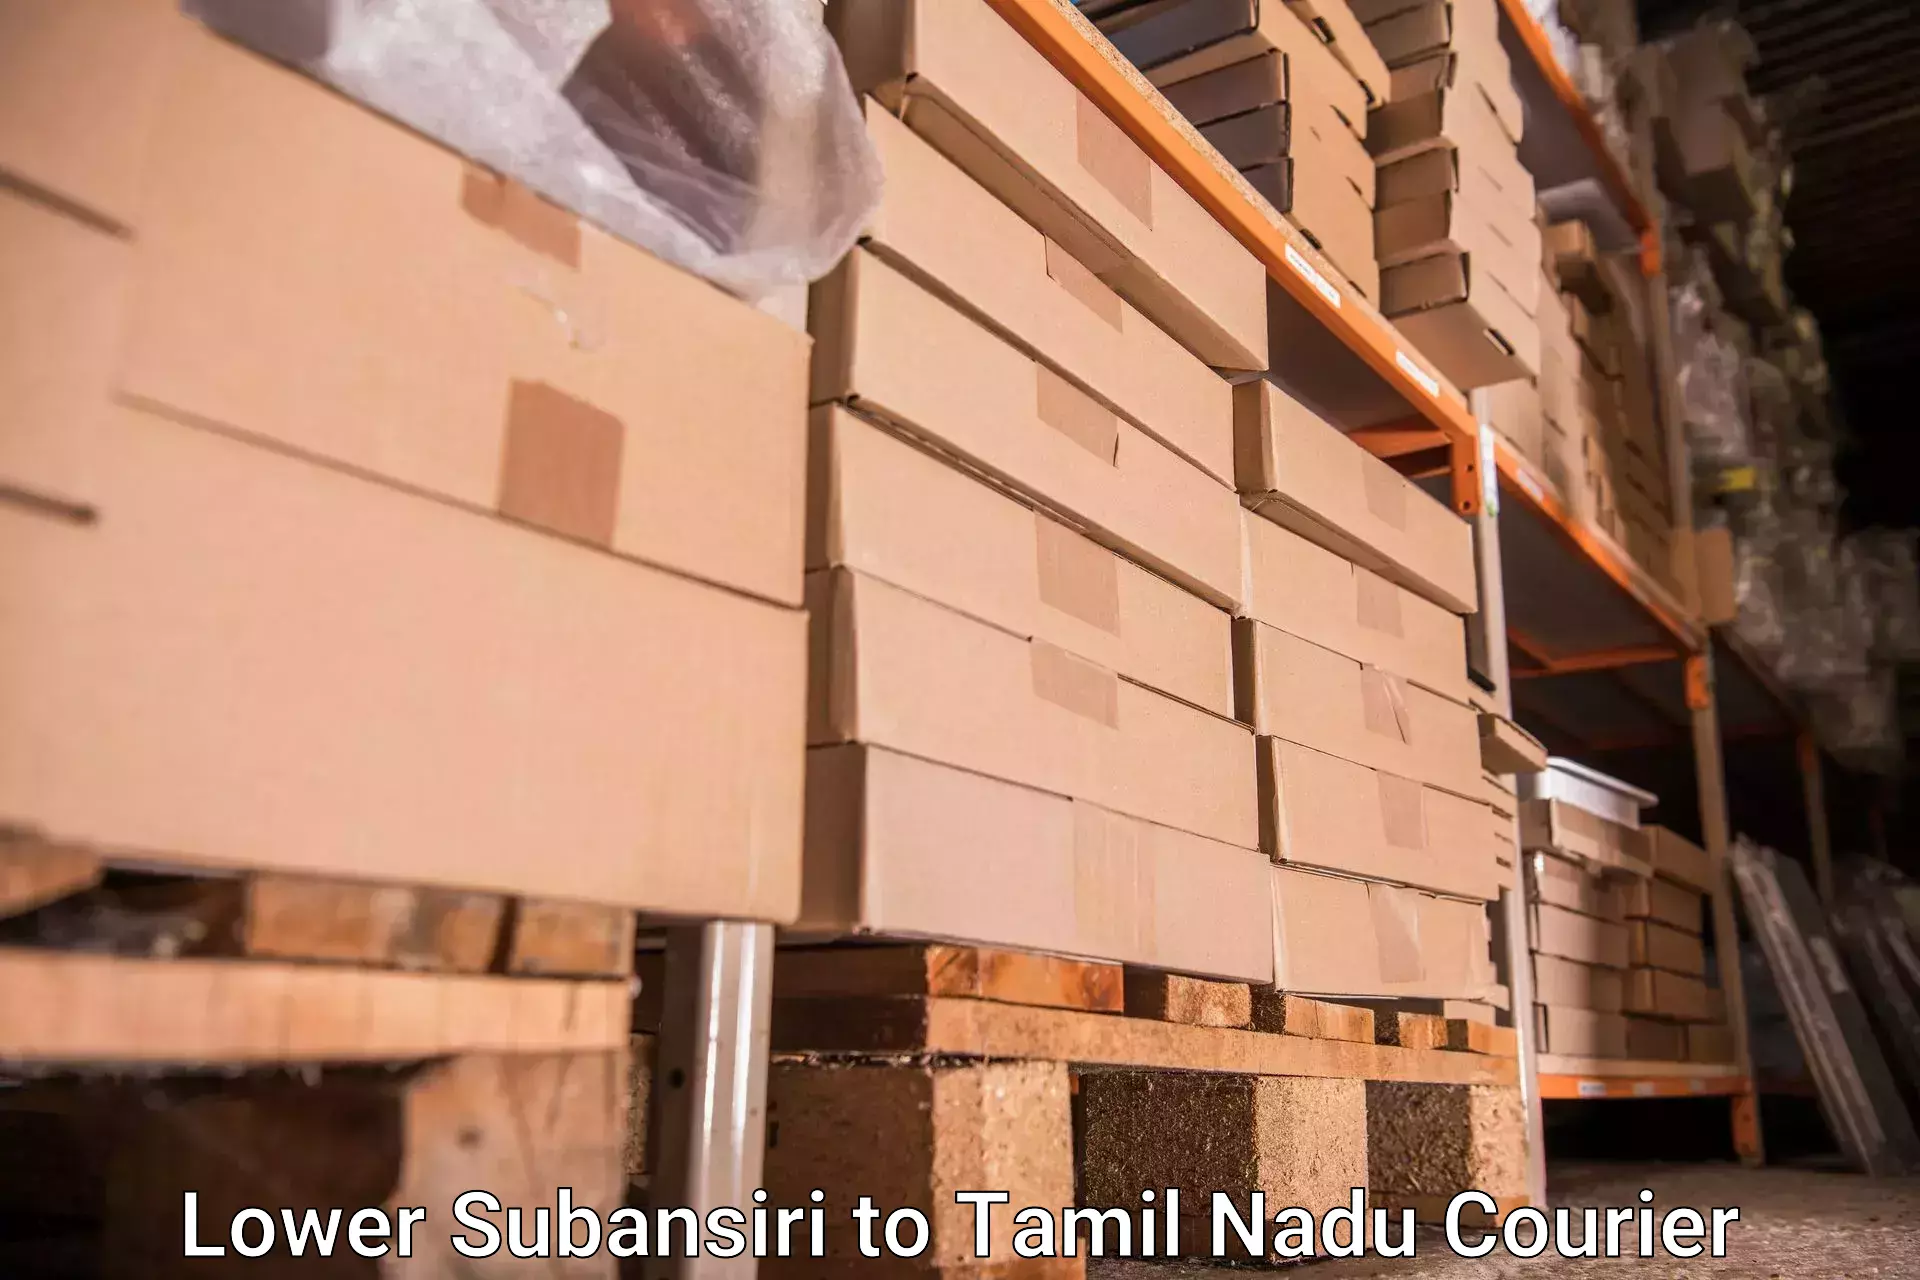 Luggage shipment tracking in Lower Subansiri to Pudukkottai